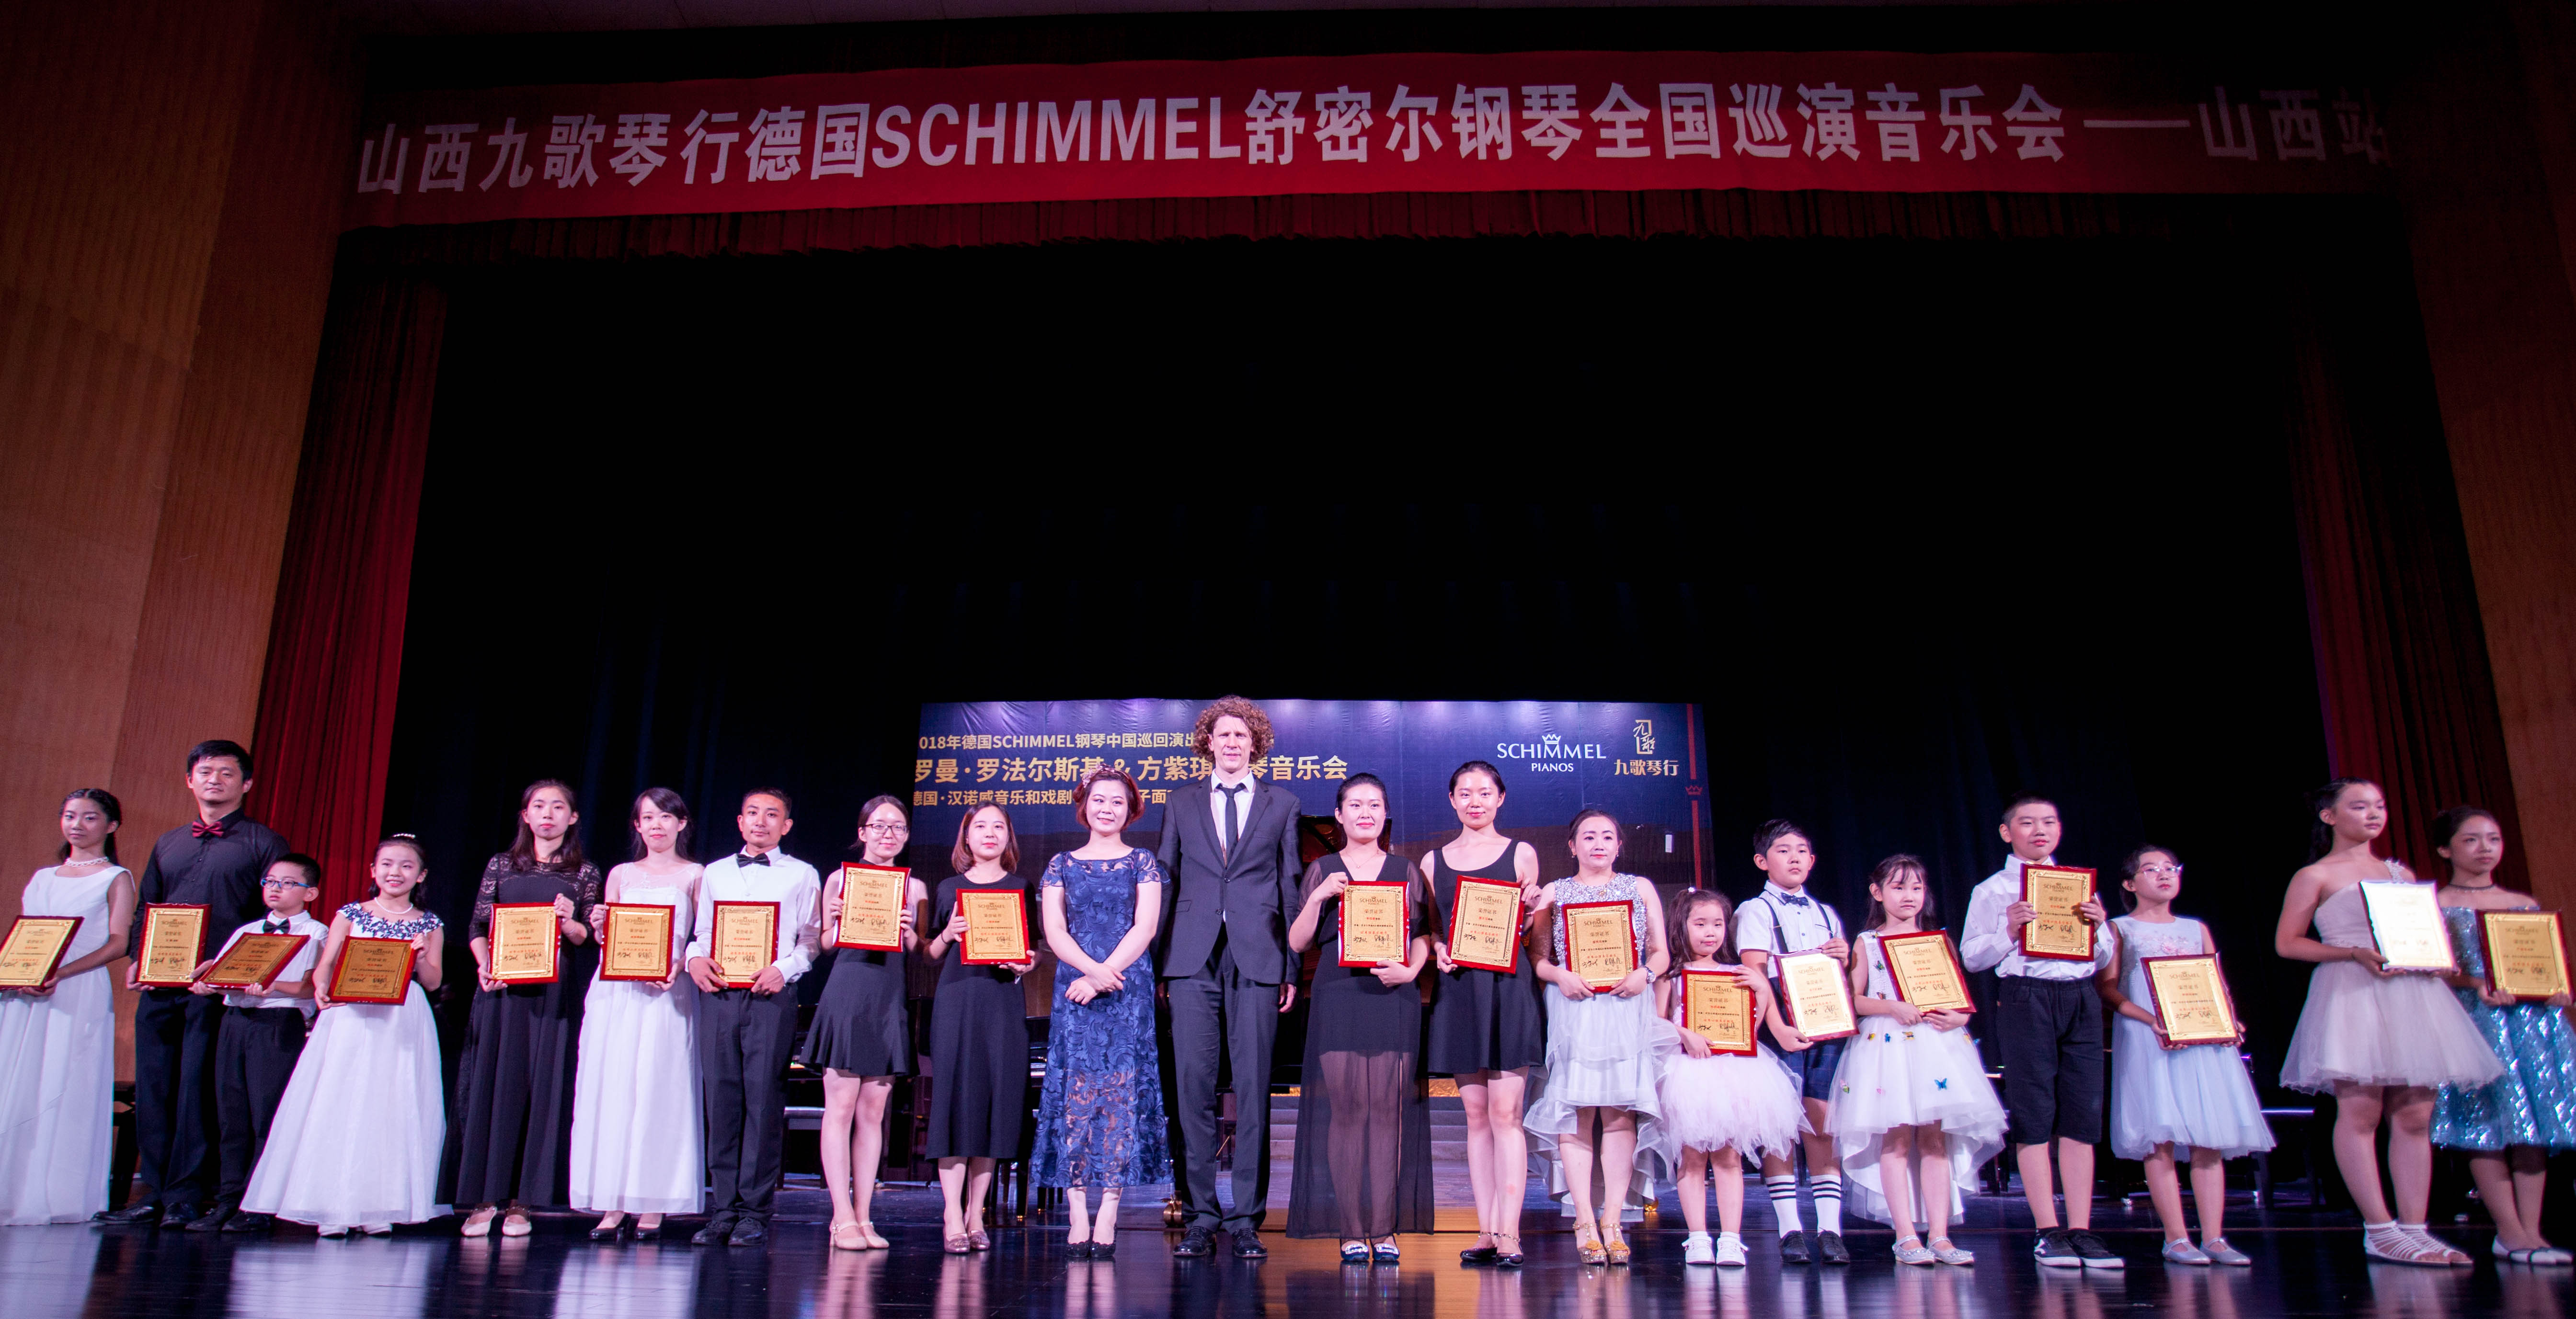 渐入佳境 | 2018年德国SCHIMMEL钢琴中国巡回演出兰州站和太原站精彩回顾